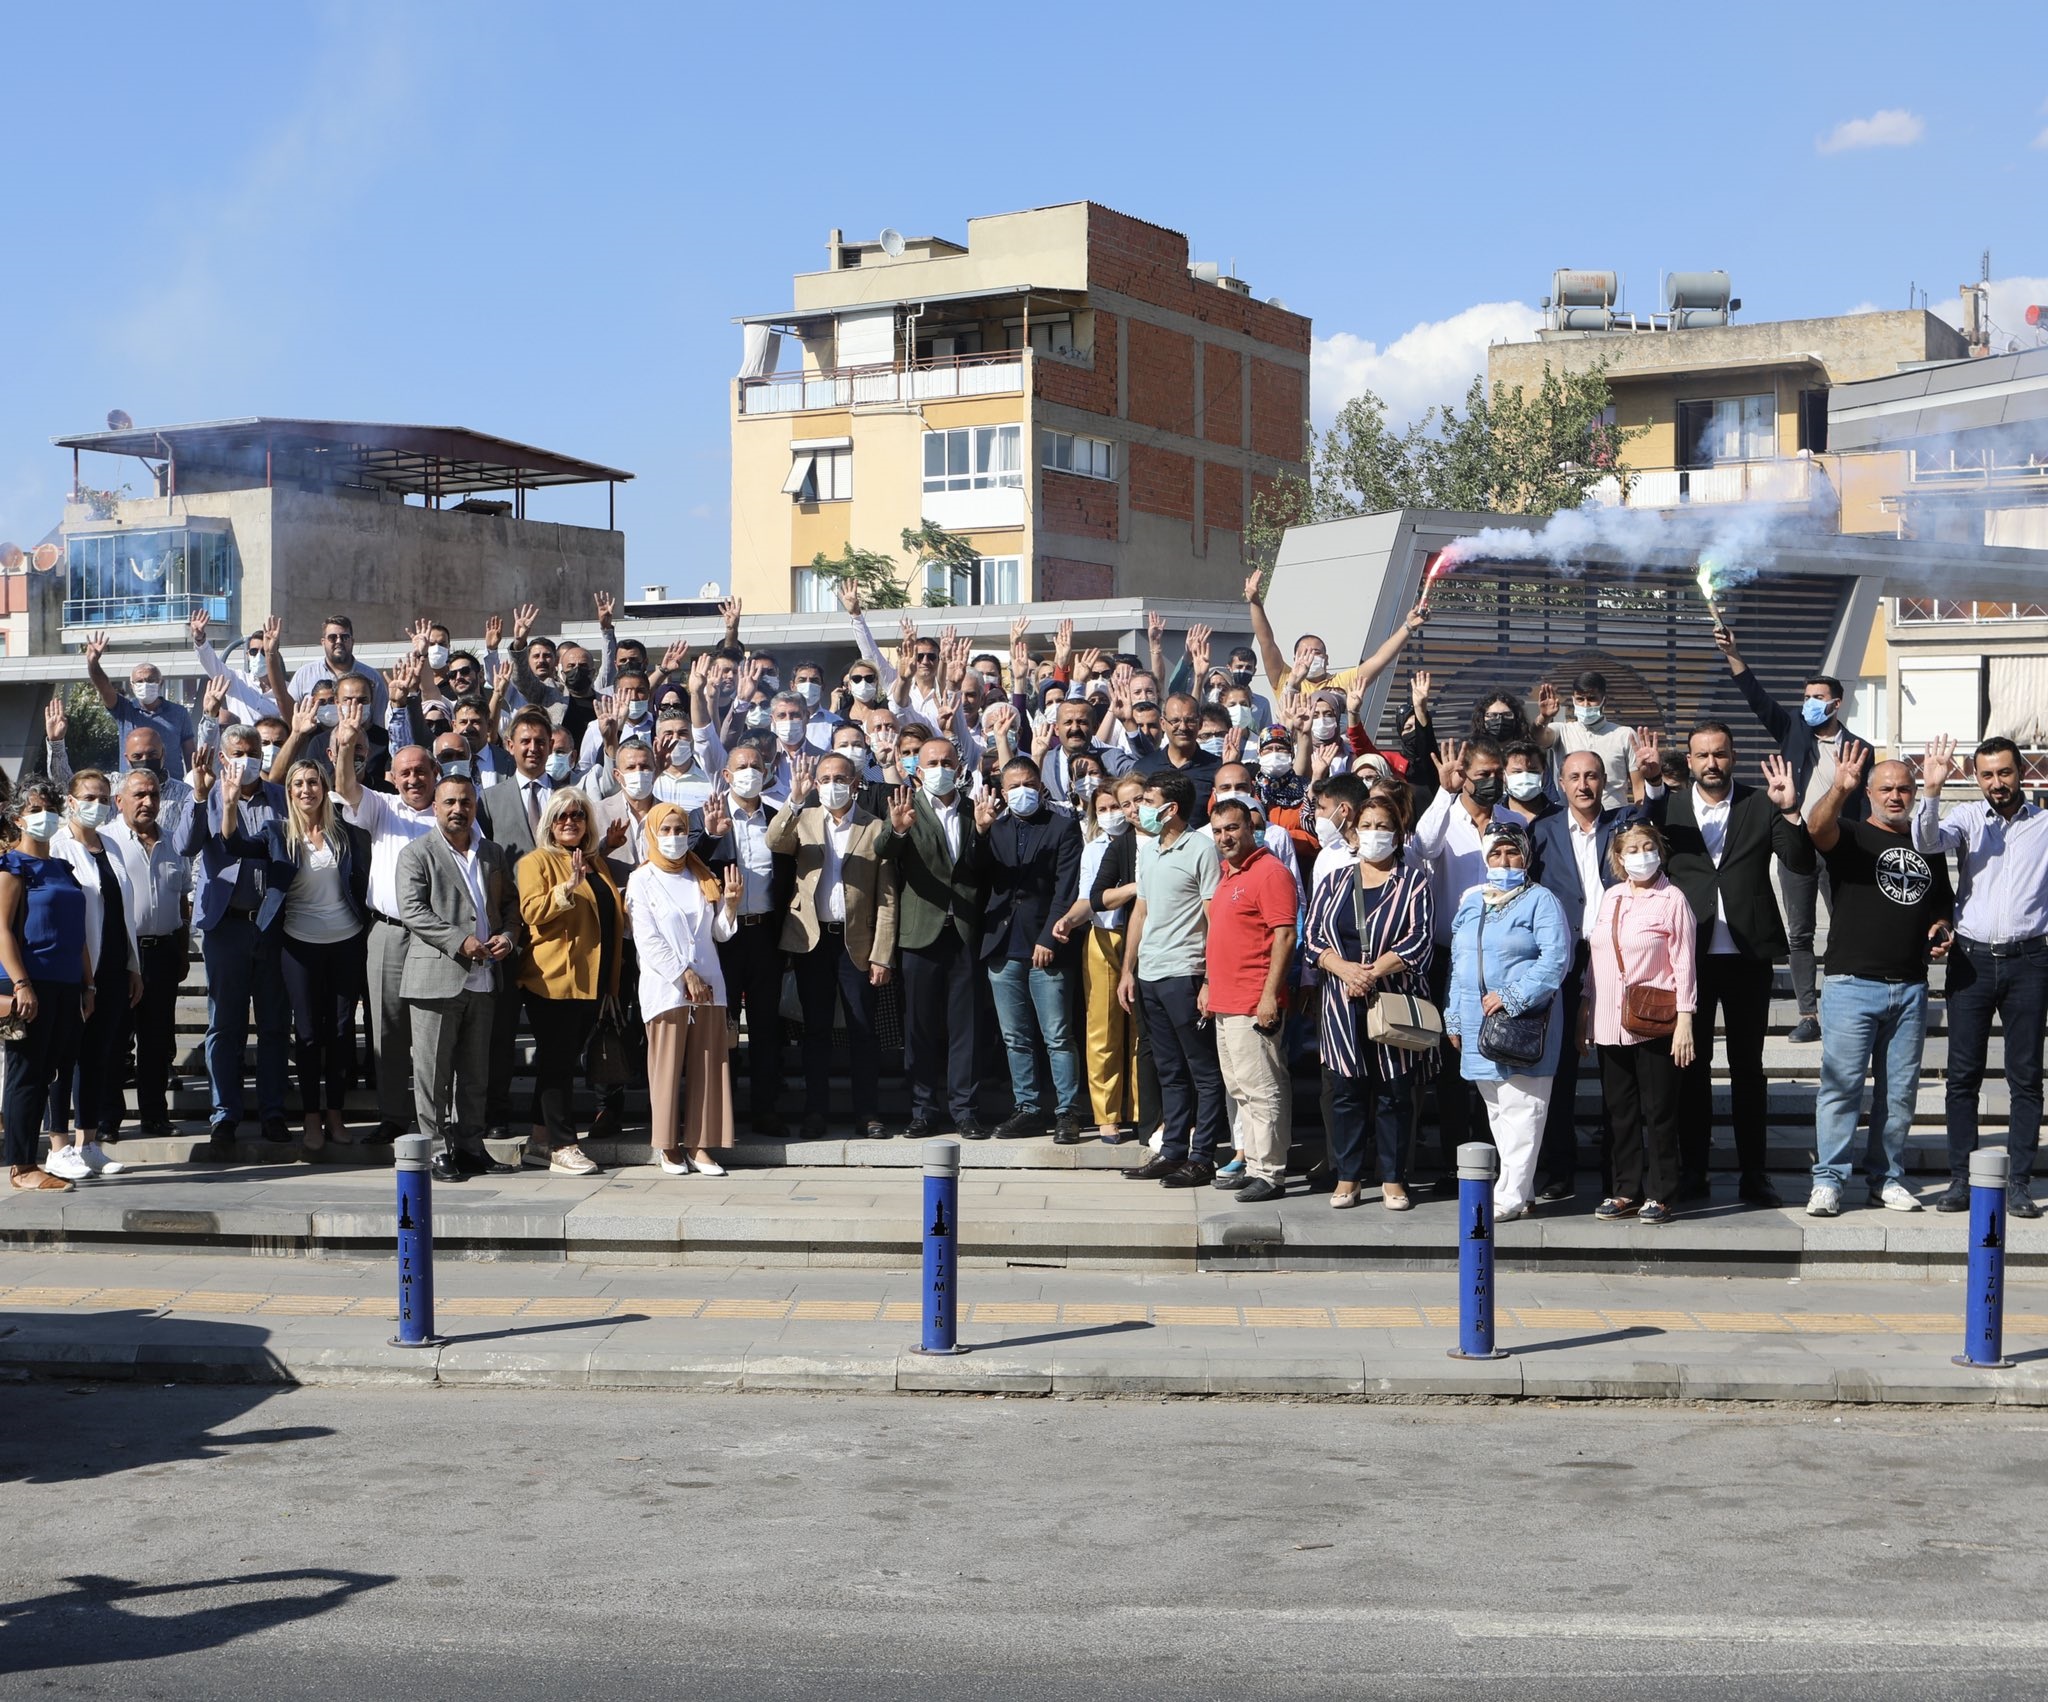 AK Parti İzmir’den; 200 kişiyle Karabağlar çıkarması